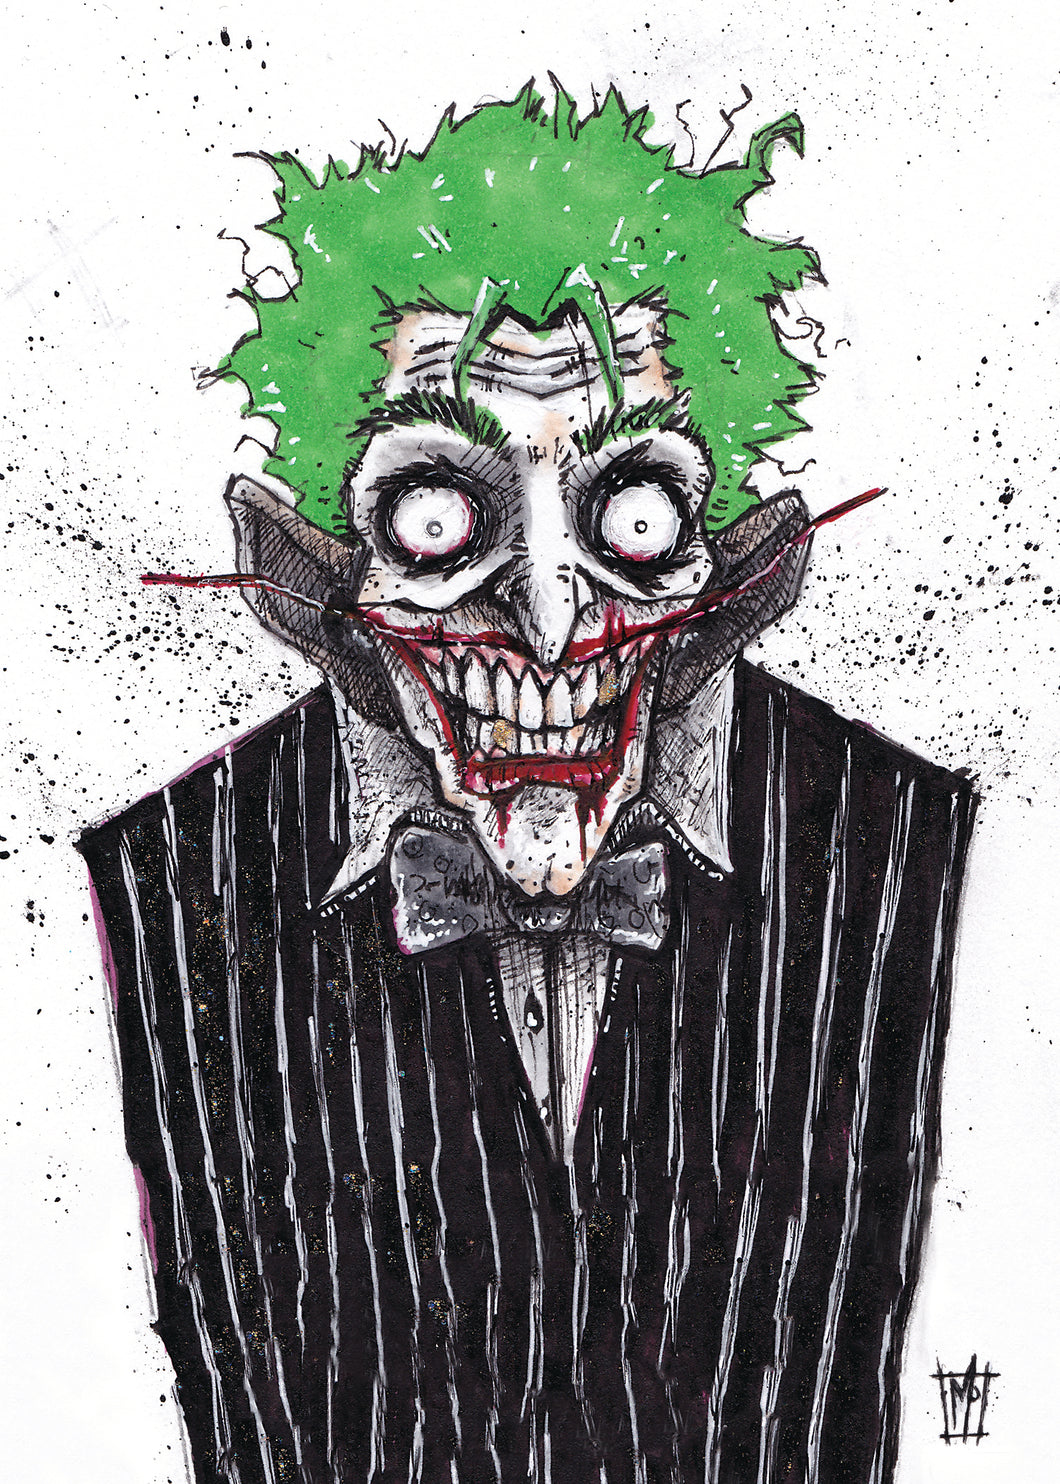 Joker 5